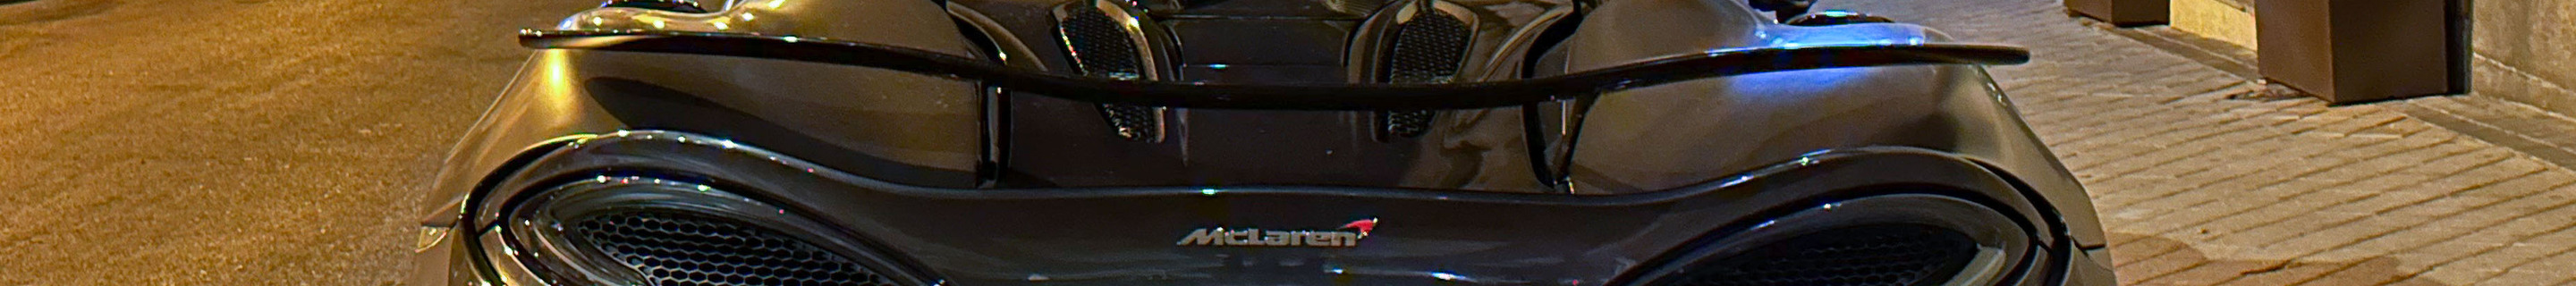 McLaren 570S Novitec